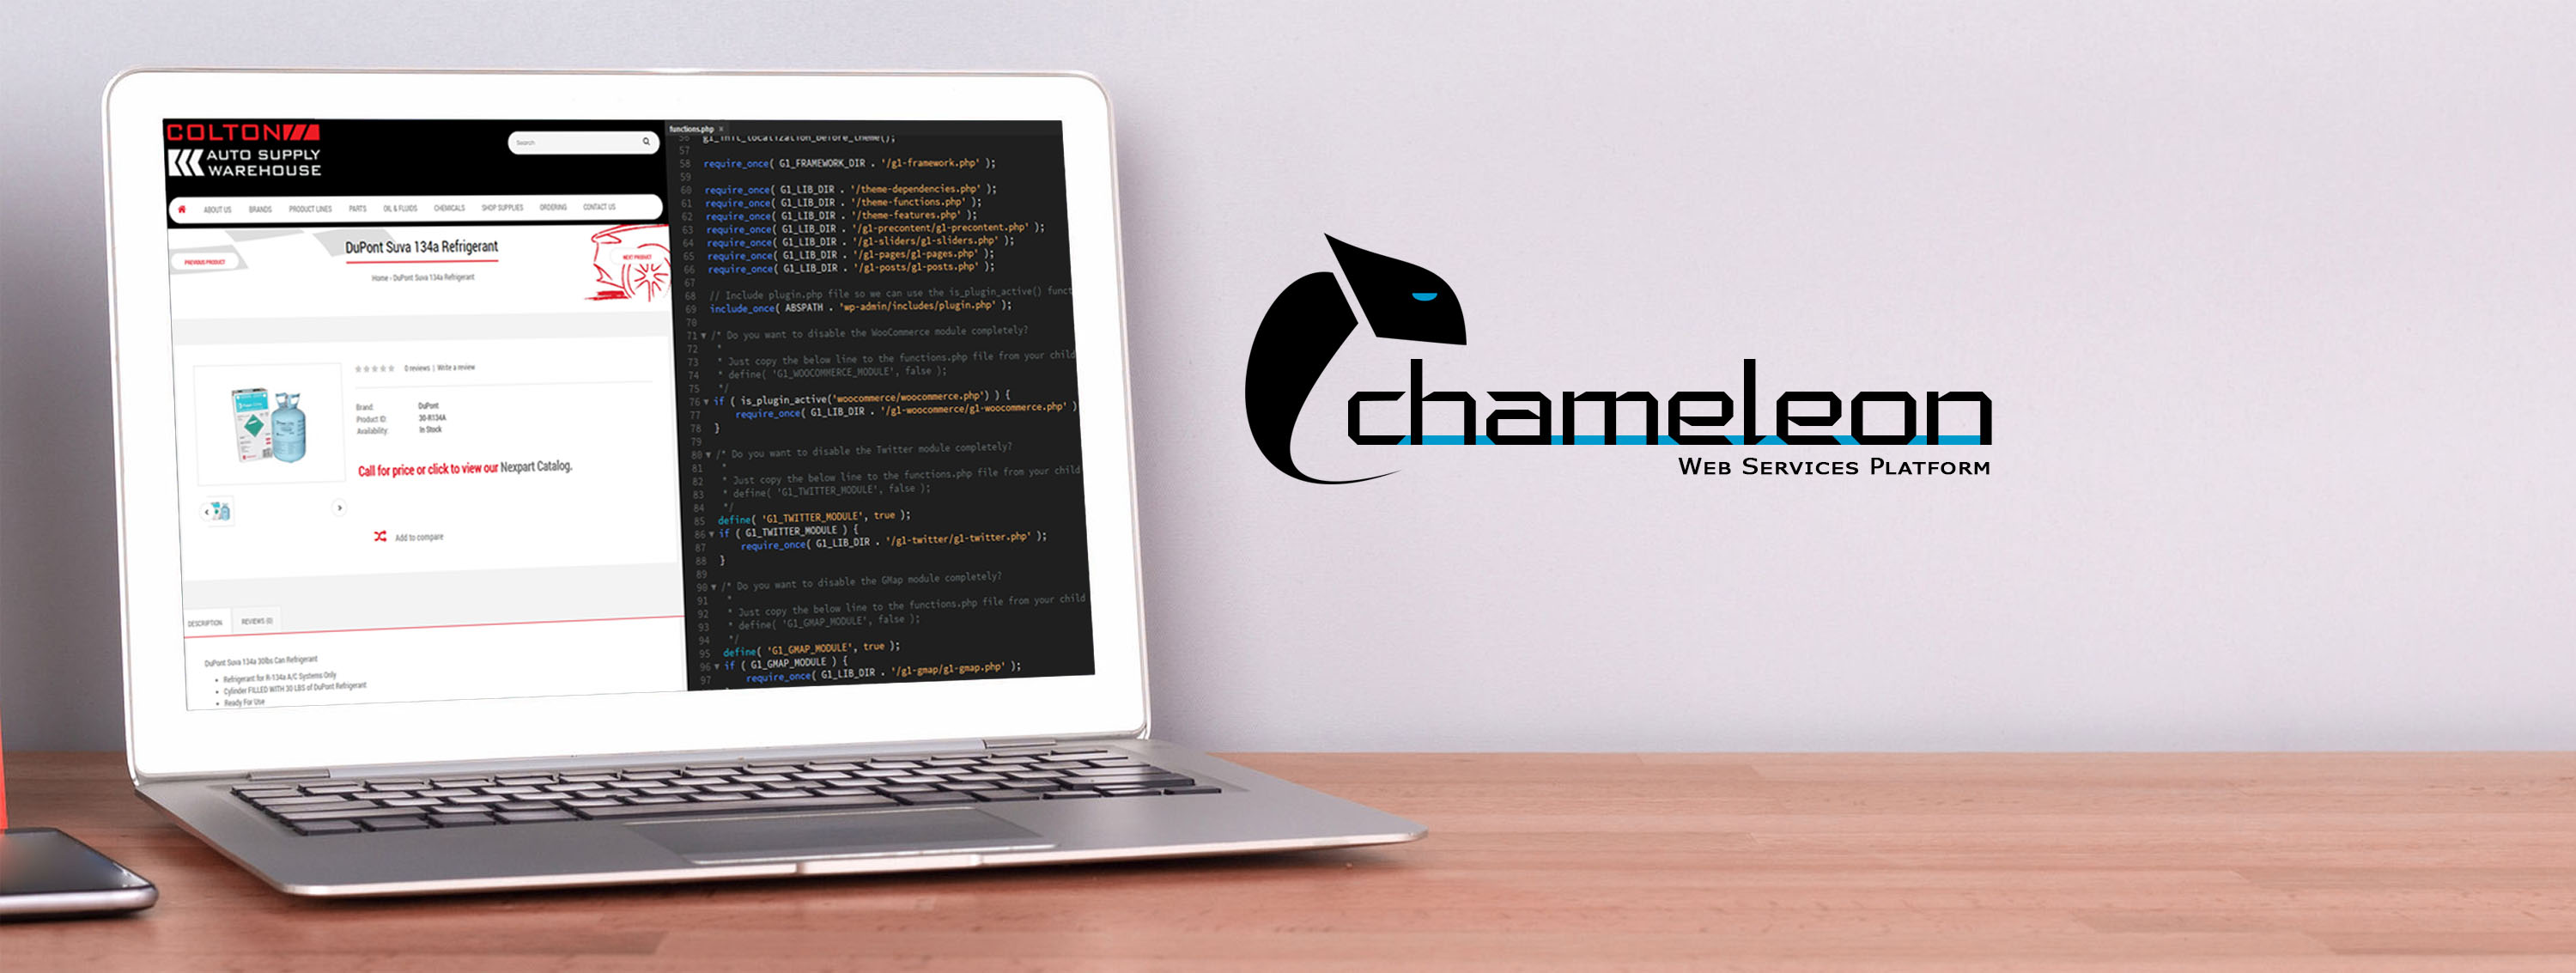 mobiWebcom chameleon web services